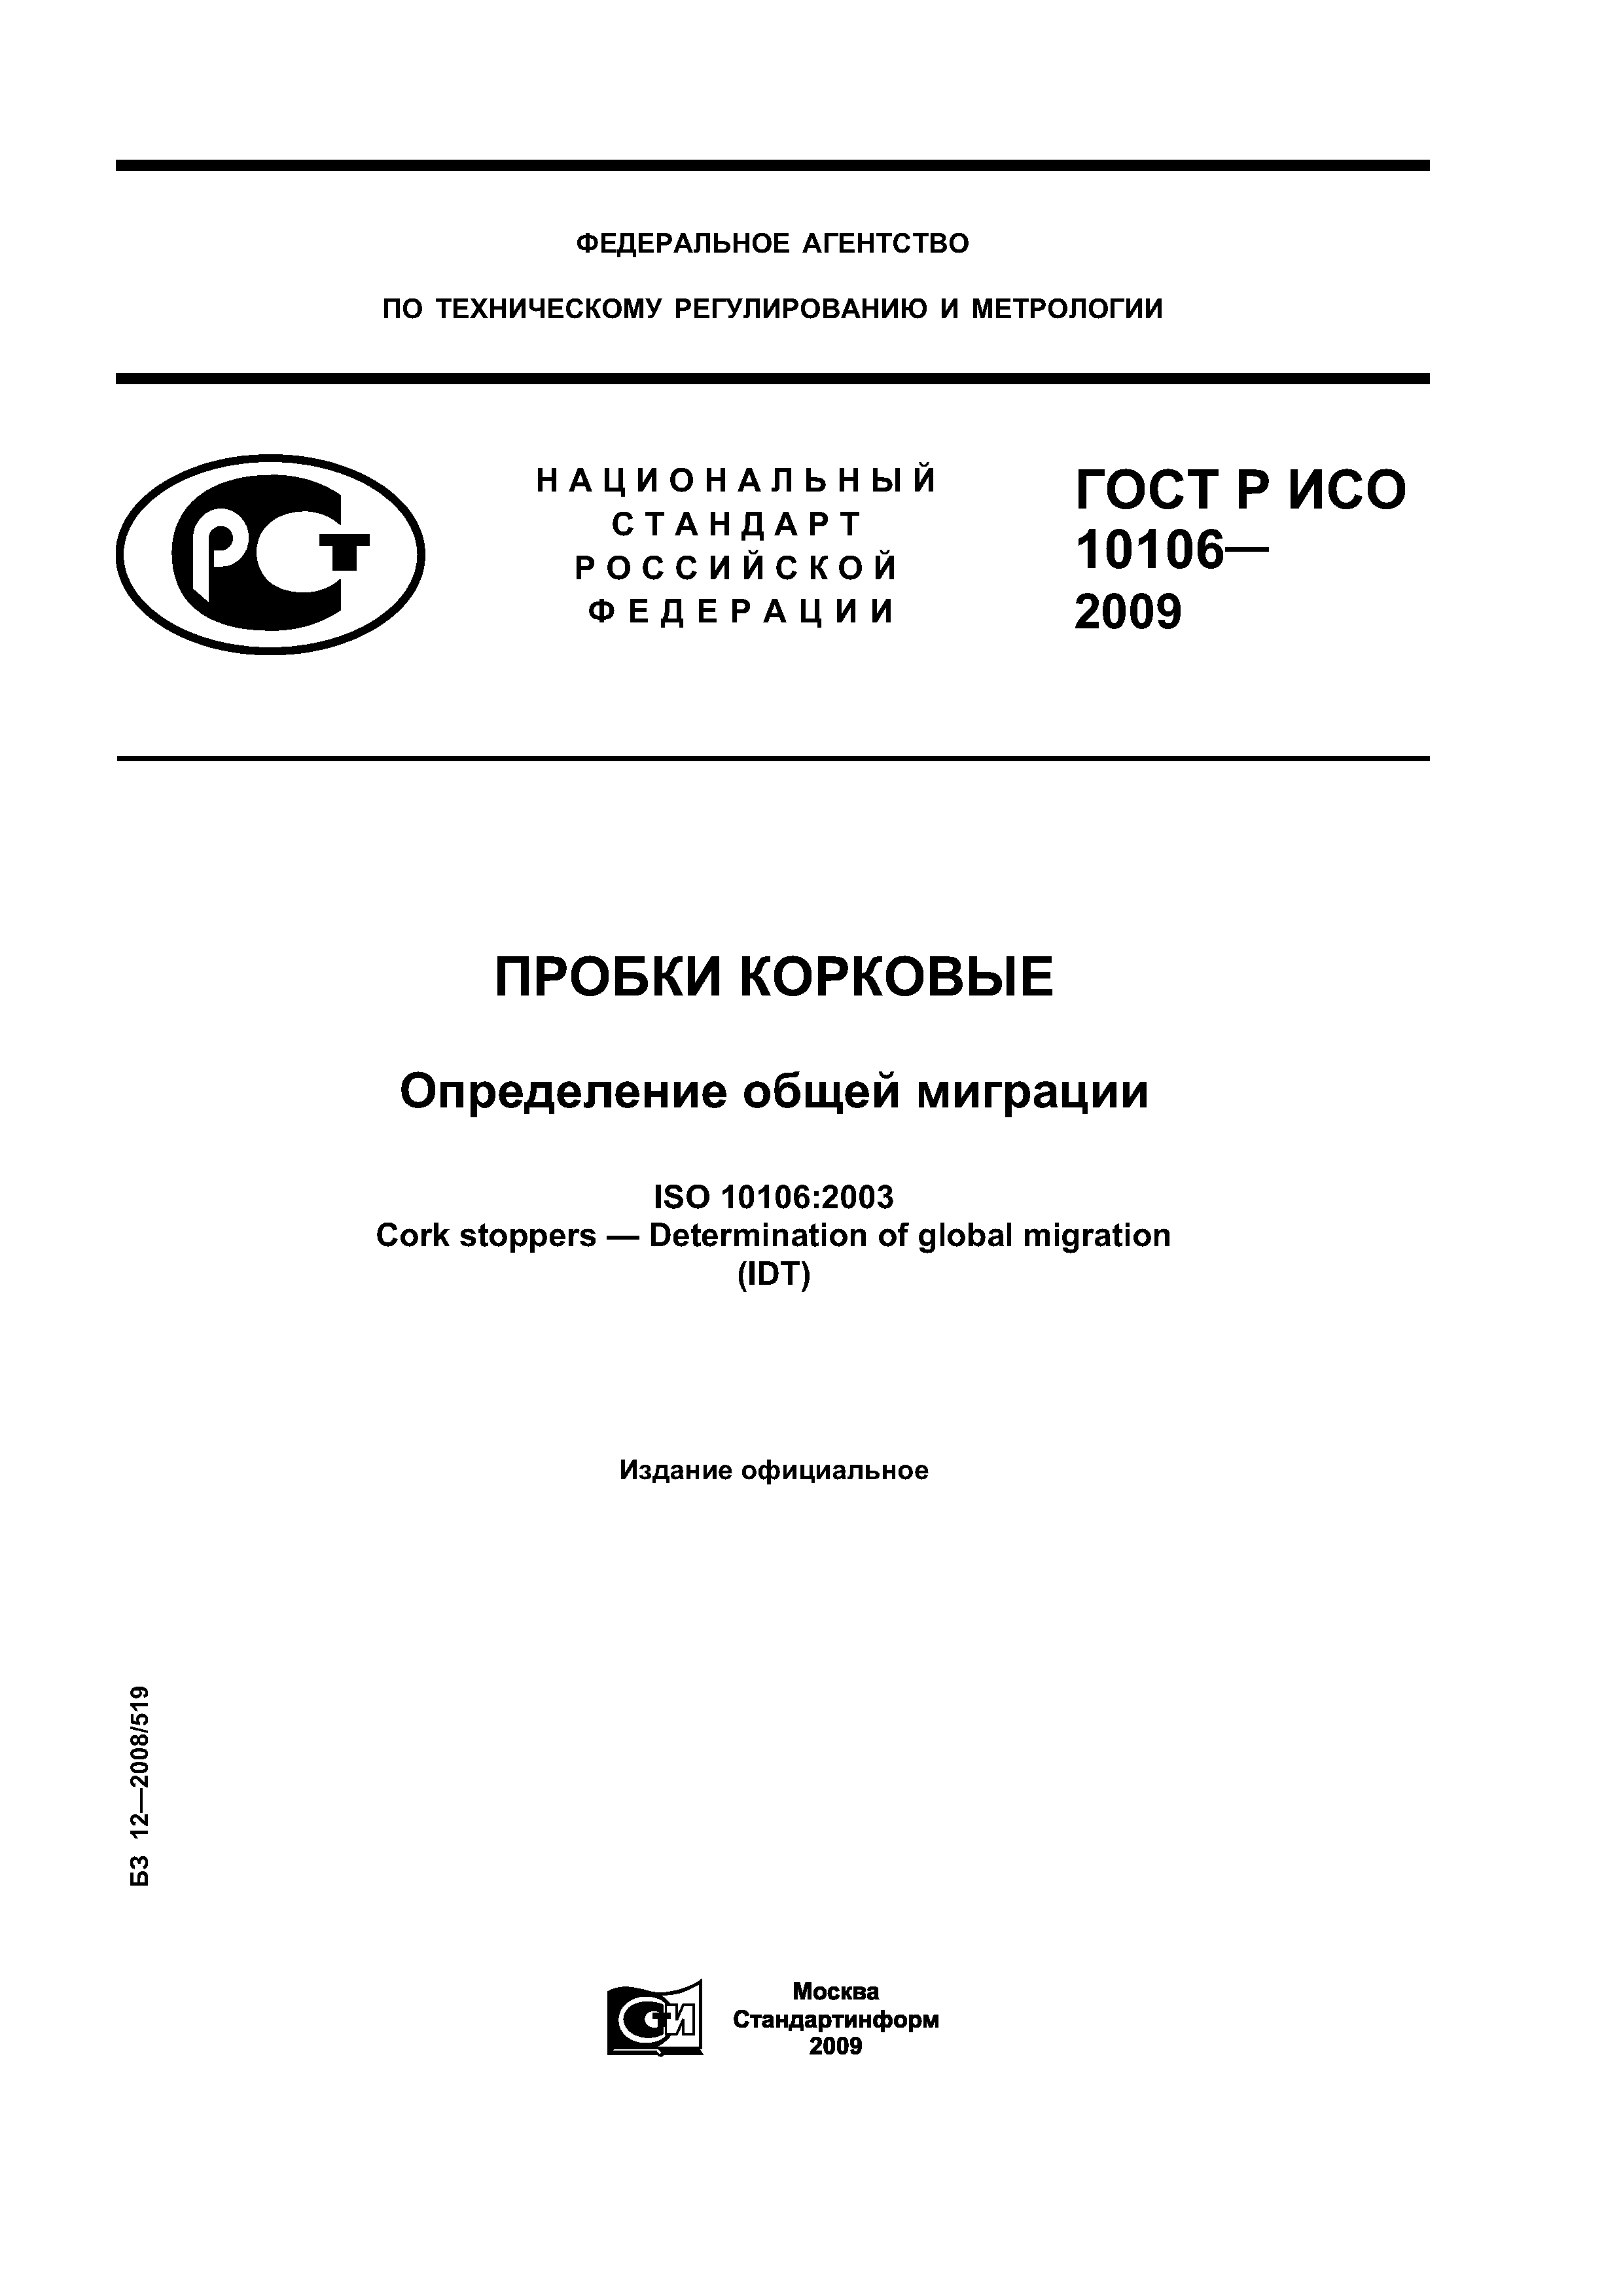 ГОСТ Р ИСО 10106-2009